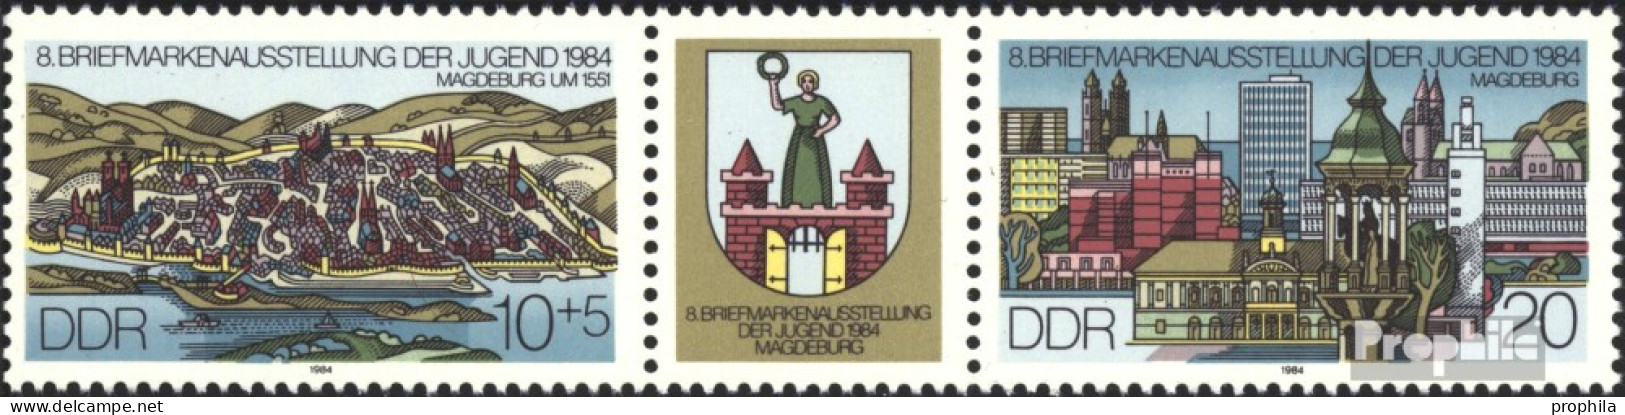 DDR WZd609 (kompl.Ausg.) (2903-2904 Als Dreierstreifen) Postfrisch 1984 Briefmarkenausstellung - Se-Tenant